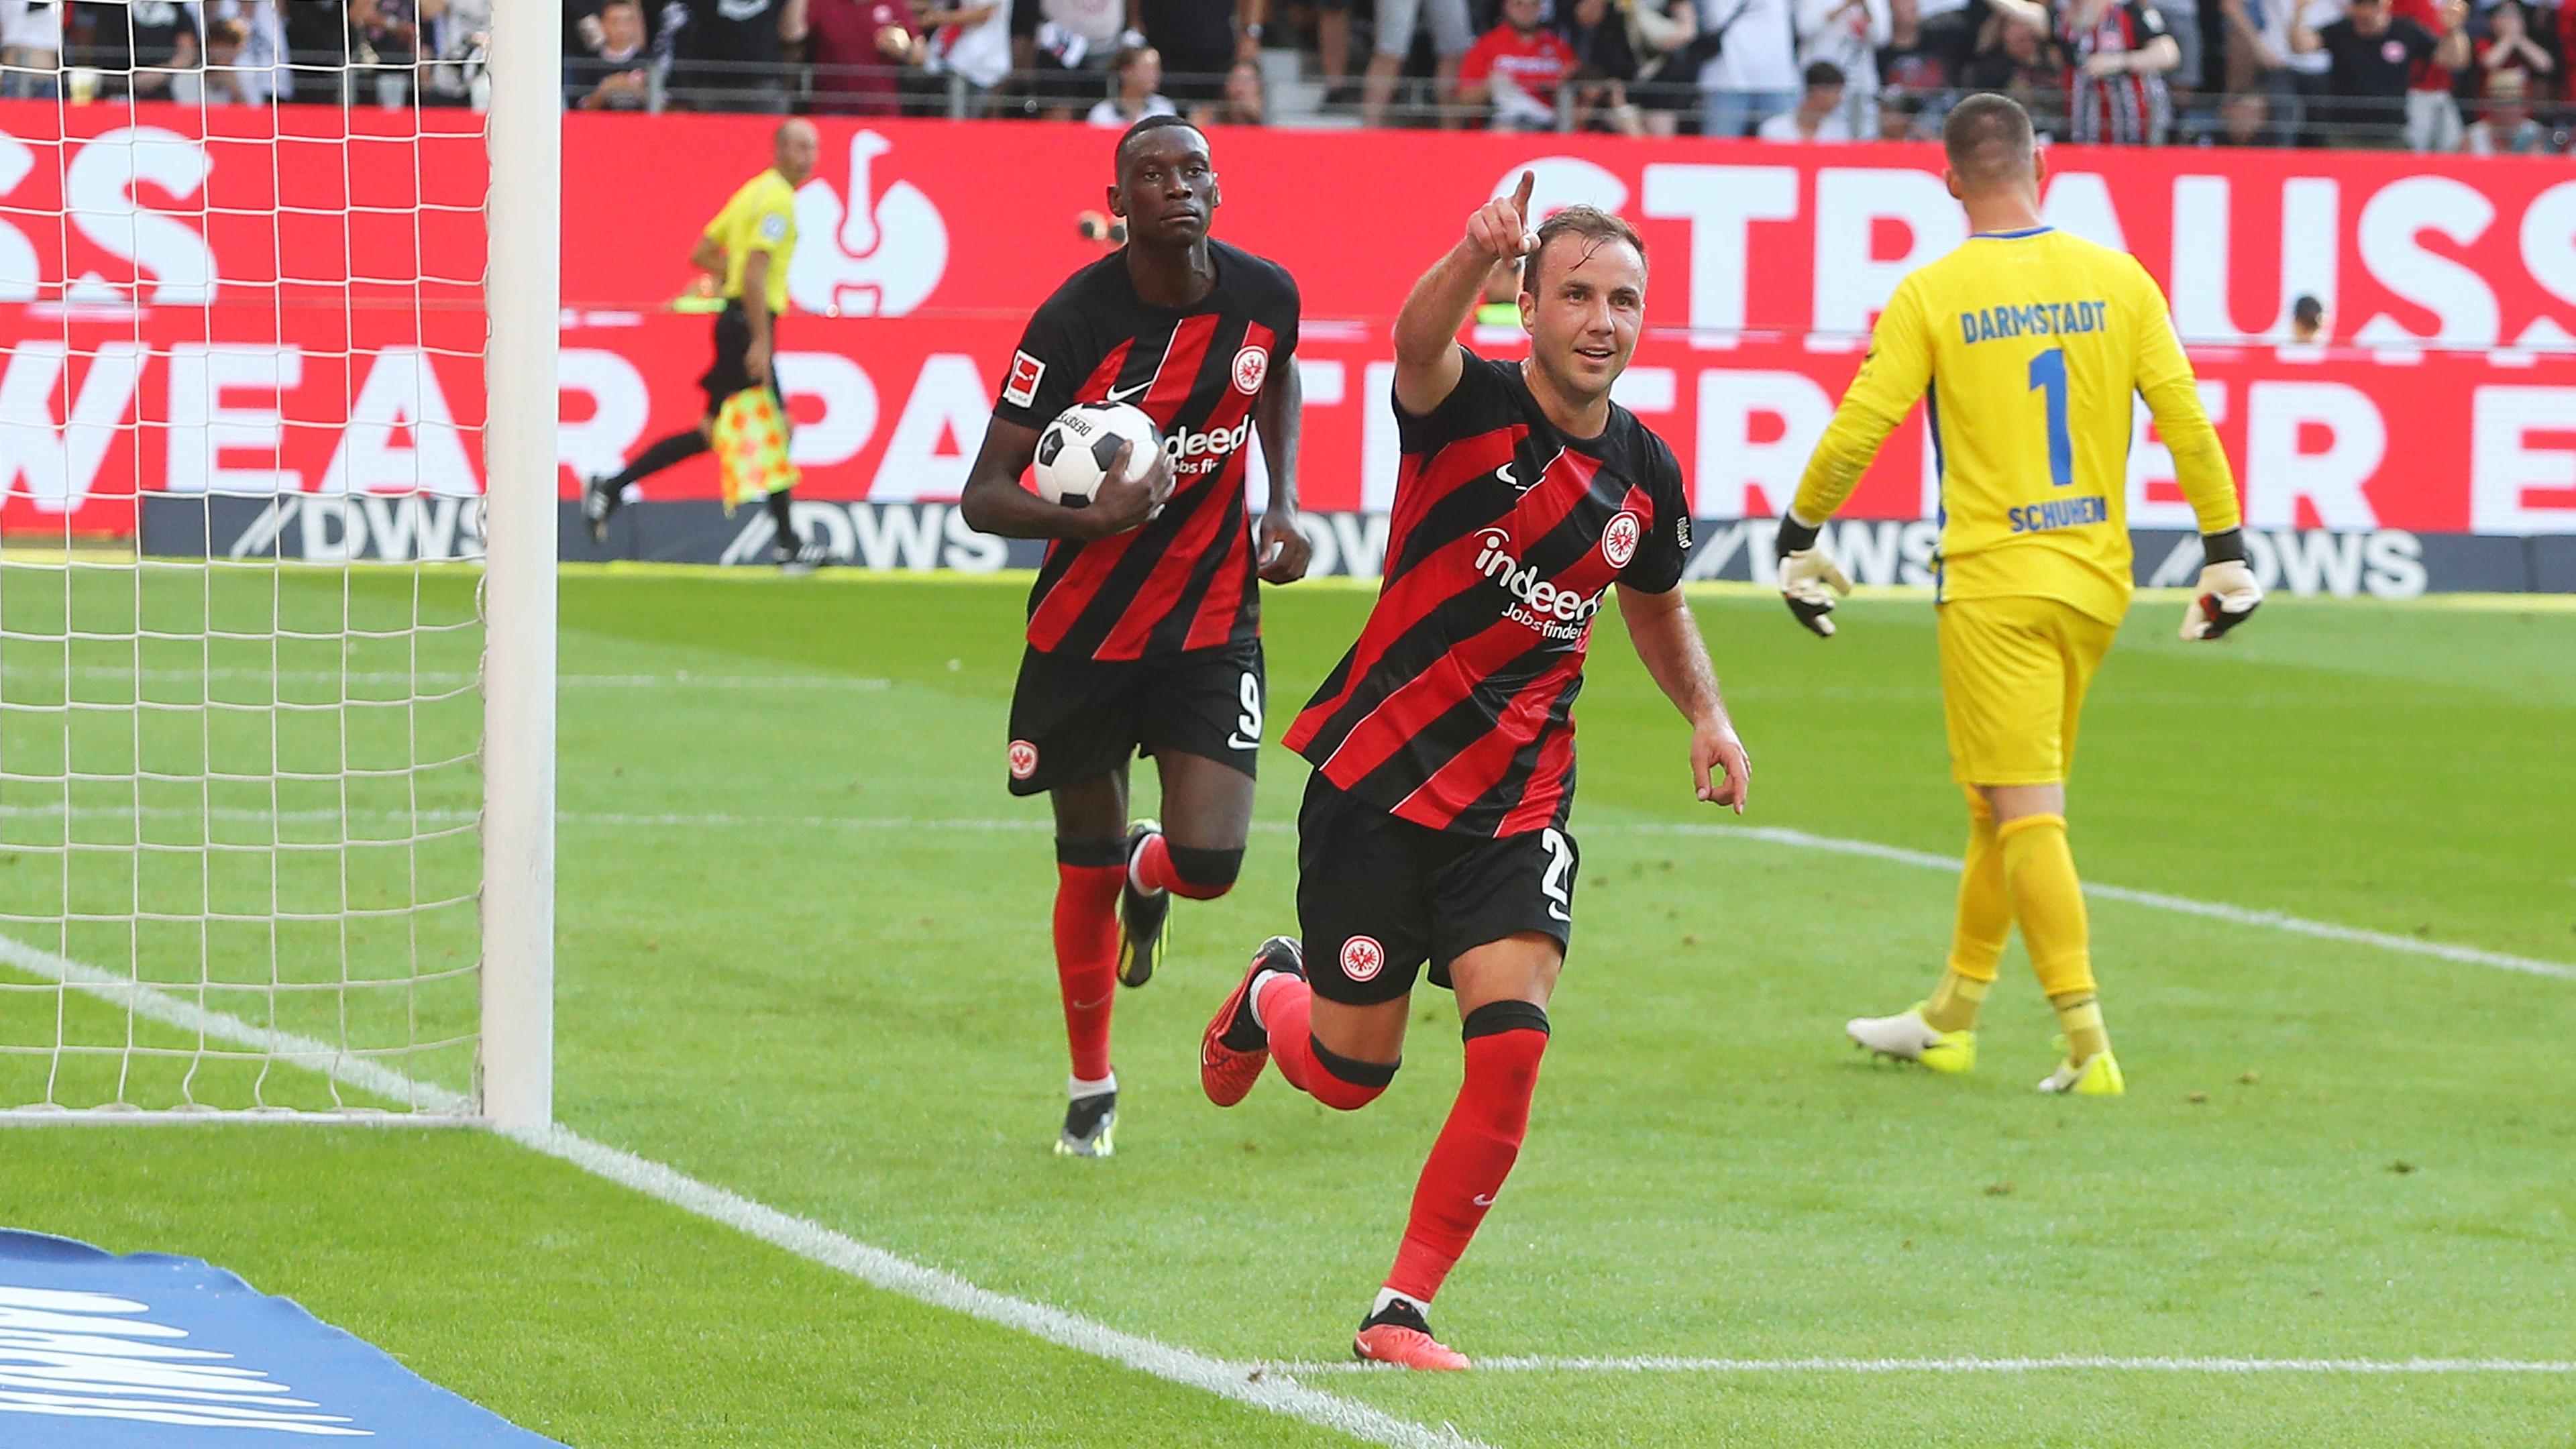 Europapokal Lösbare Aufgaben für Eintracht Frankfurt